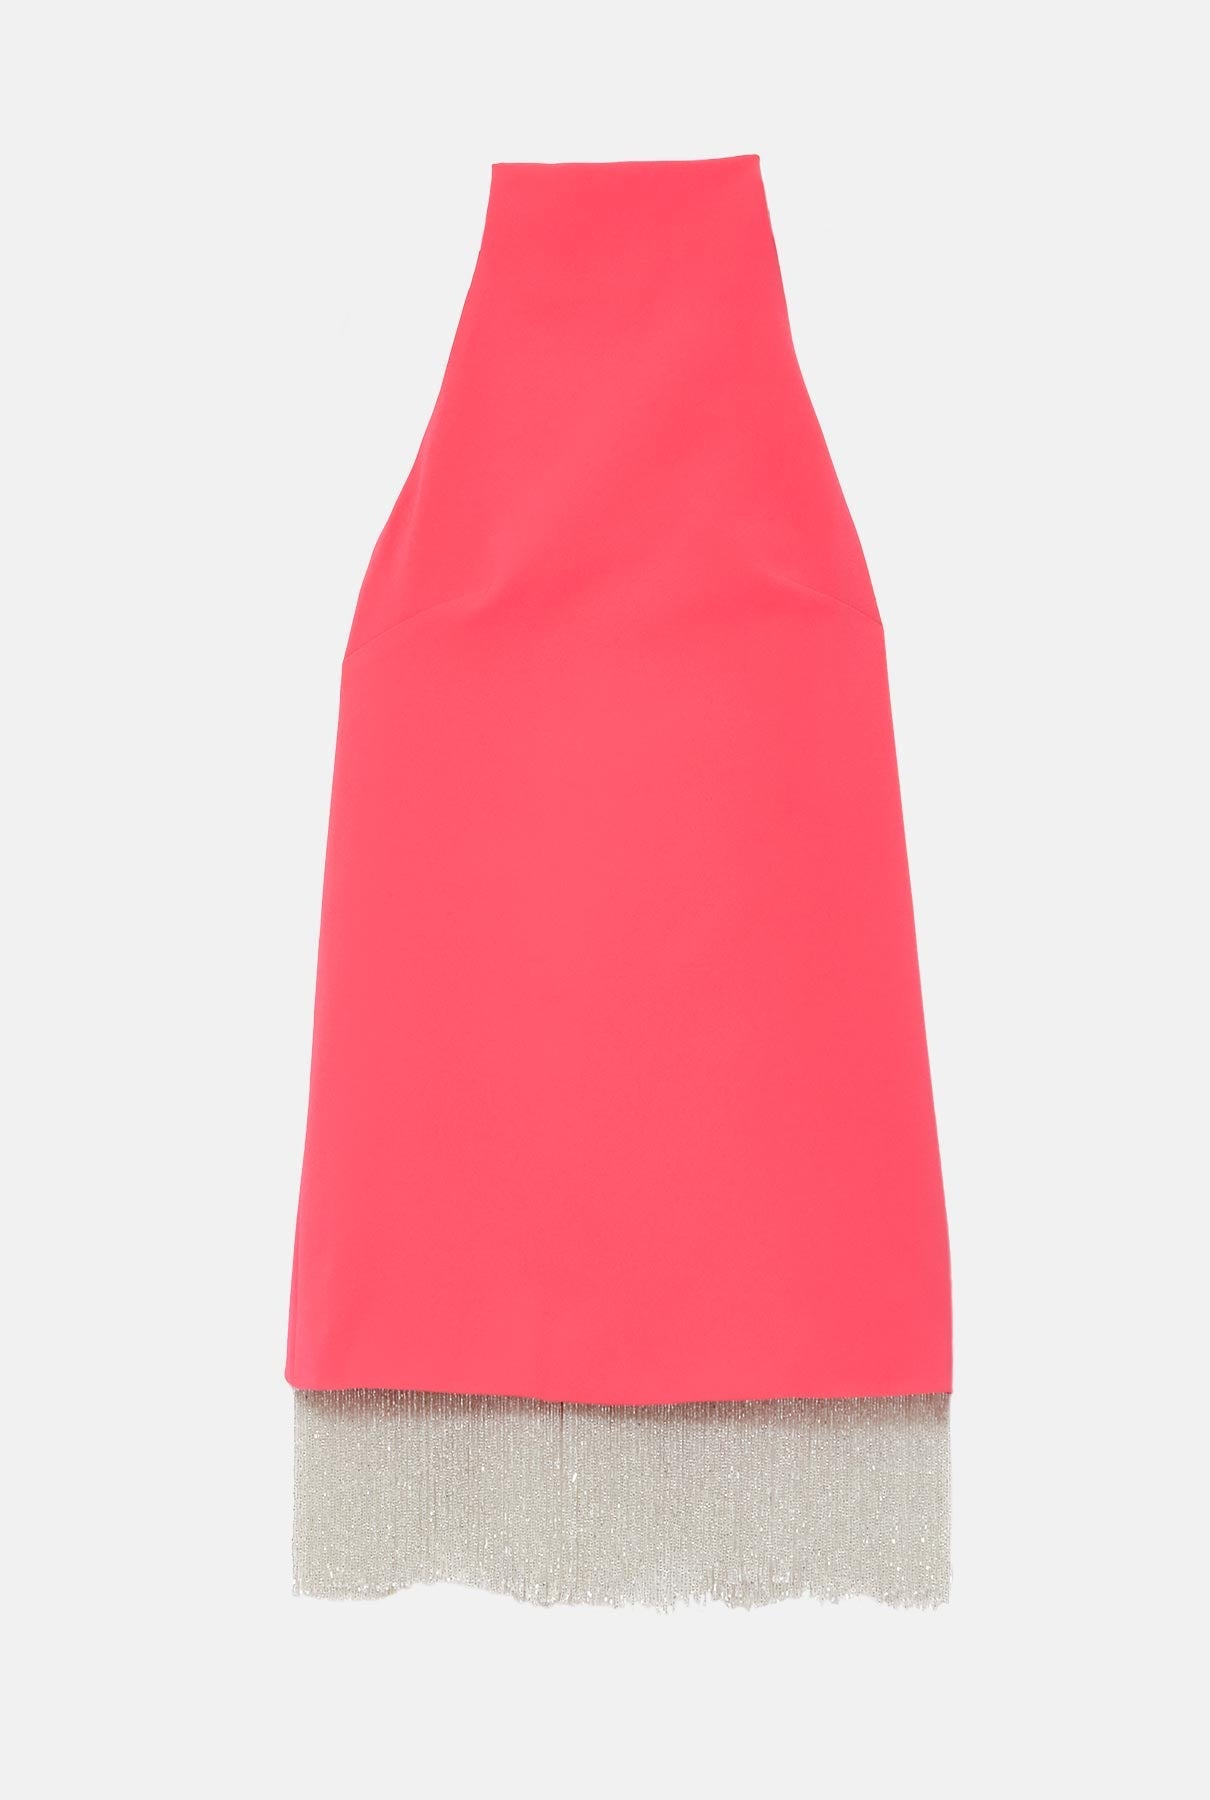 Daniella pink dress - Pre Order Dress Sophie et Voilà 